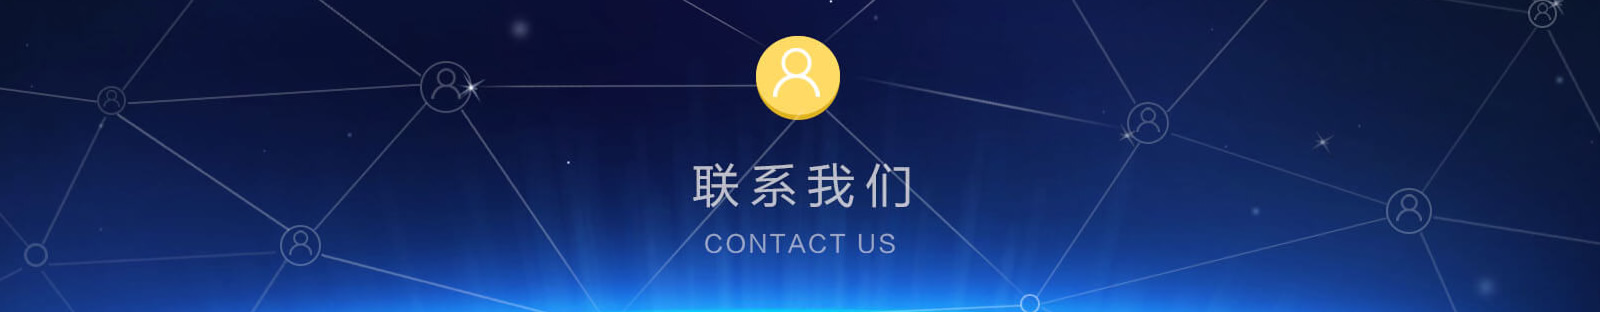 上海金蝶软件服务-联系我们